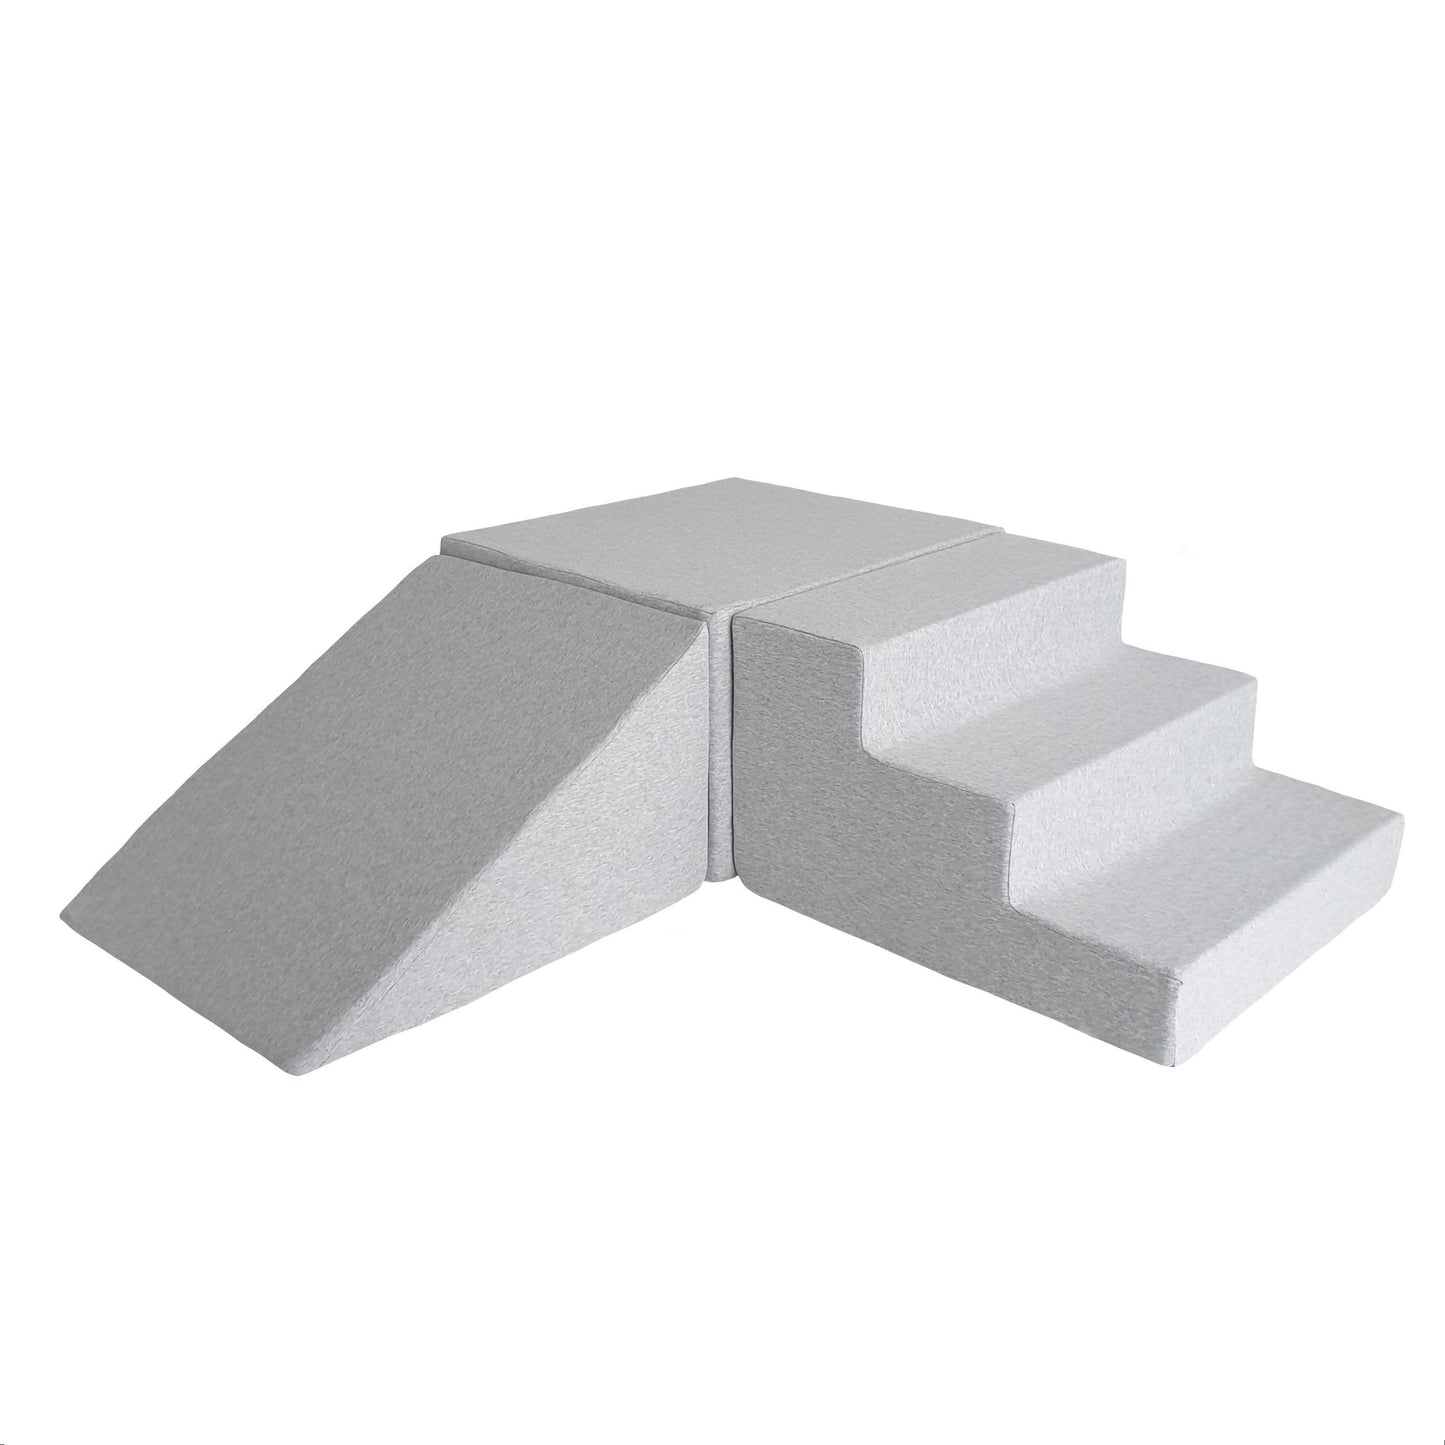 Grey Foam Soft Play - 3 Elements